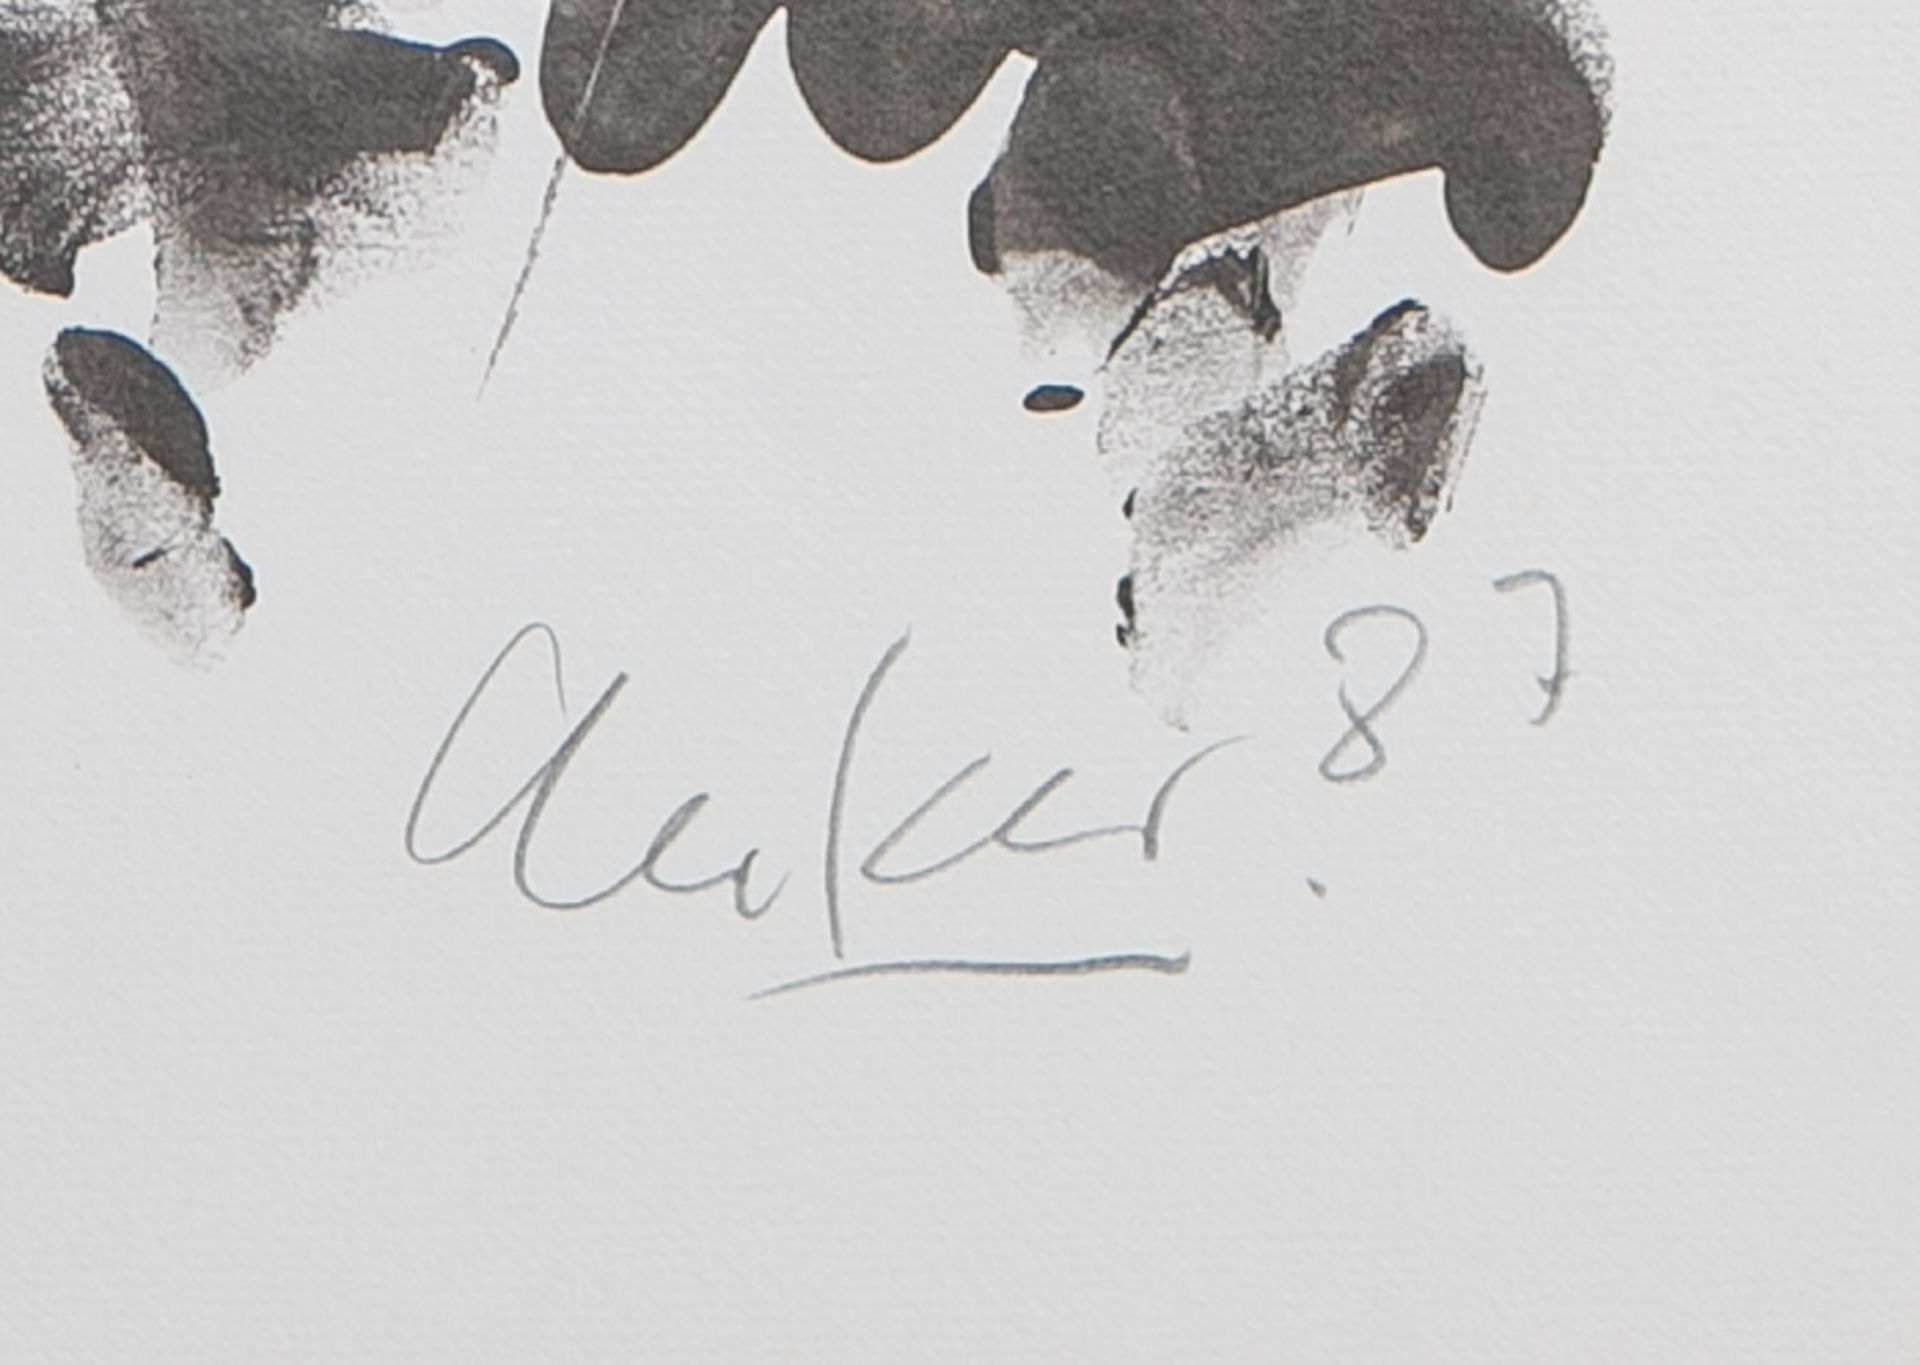 Uecker, Günther (geb. 1930), "Nagelkreuzung" (1987) - Image 2 of 2